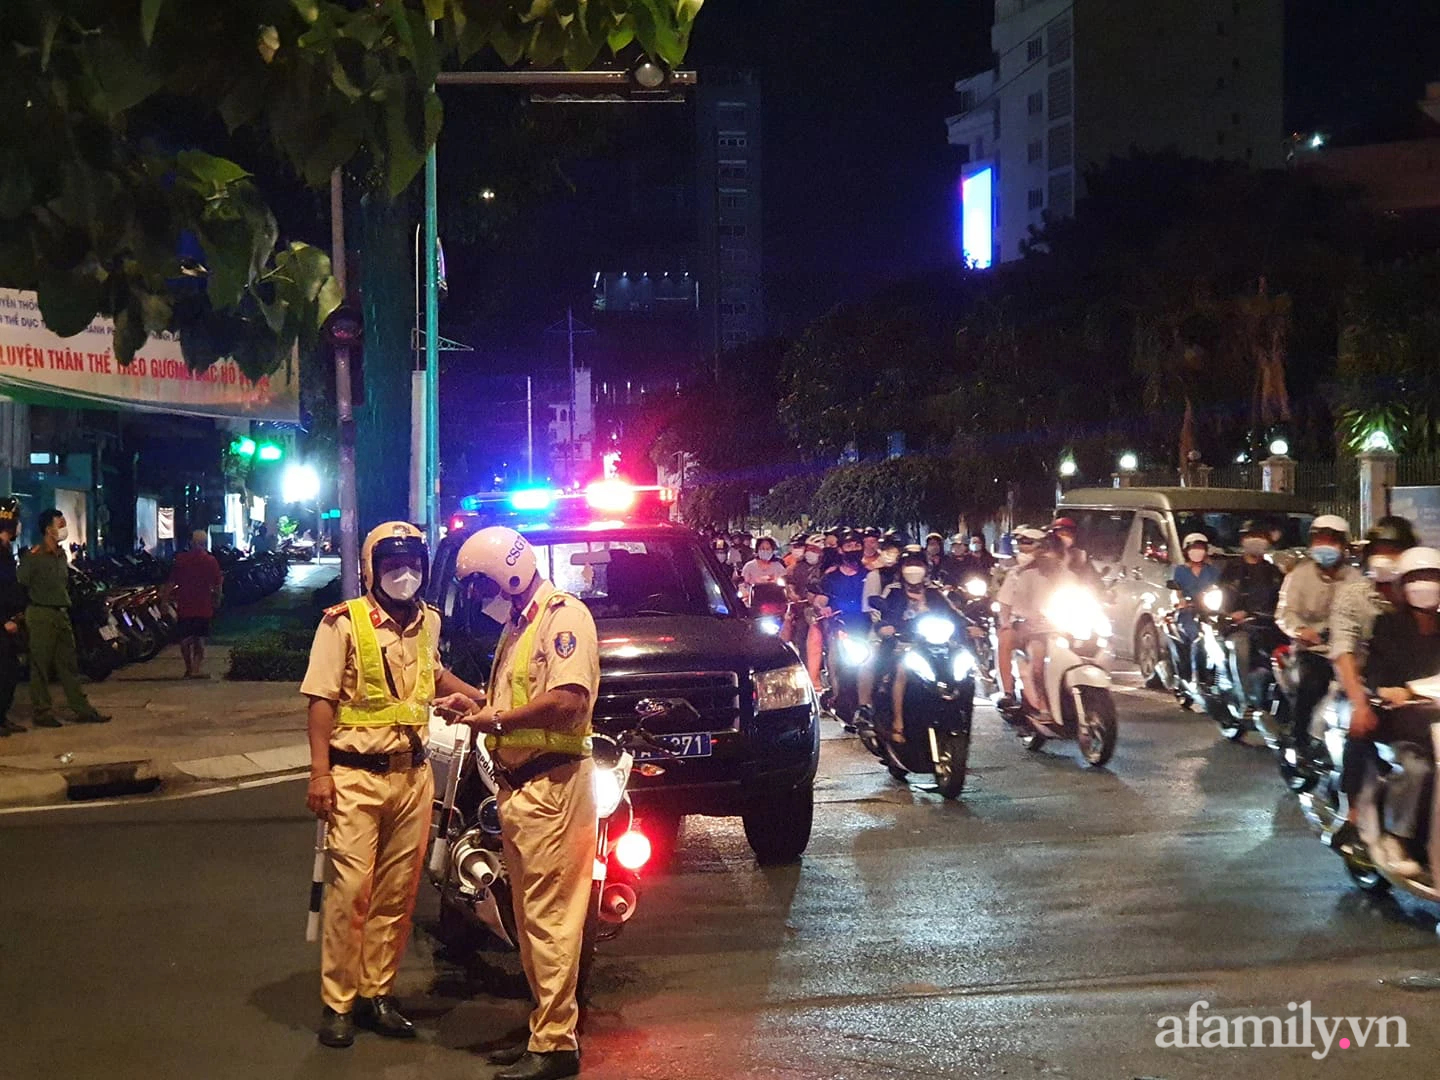 NGAY LÚC NÀY: Hàng trăm người nườm nượp kéo đến quanh biệt thự nhà bà Nguyễn Phương Hằng, cảnh sát lập rào chặn phố Nguyễn Thông - Ảnh 3.